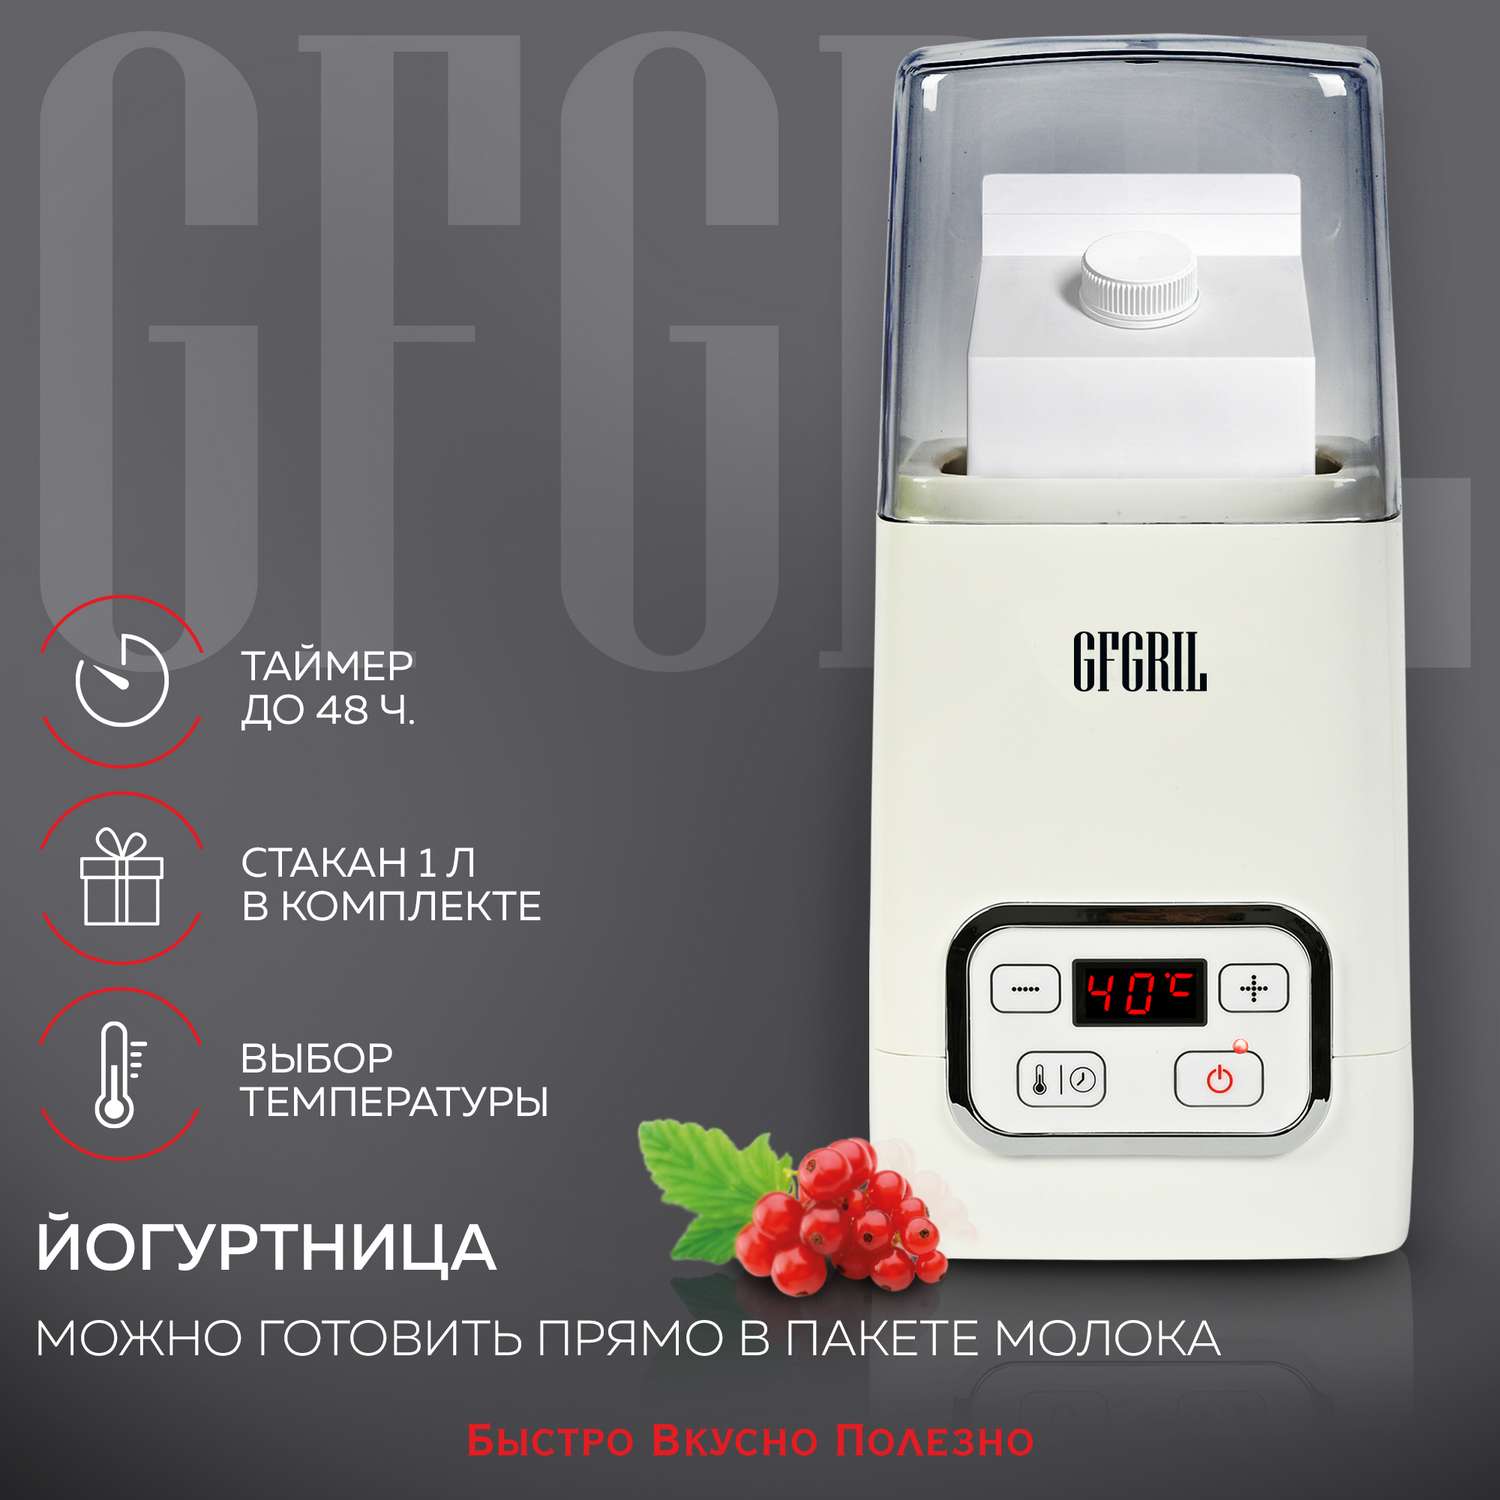 Йогуртница GFGRIL GF-YM300 на 1 л регулировка времени и температуры - фото 1